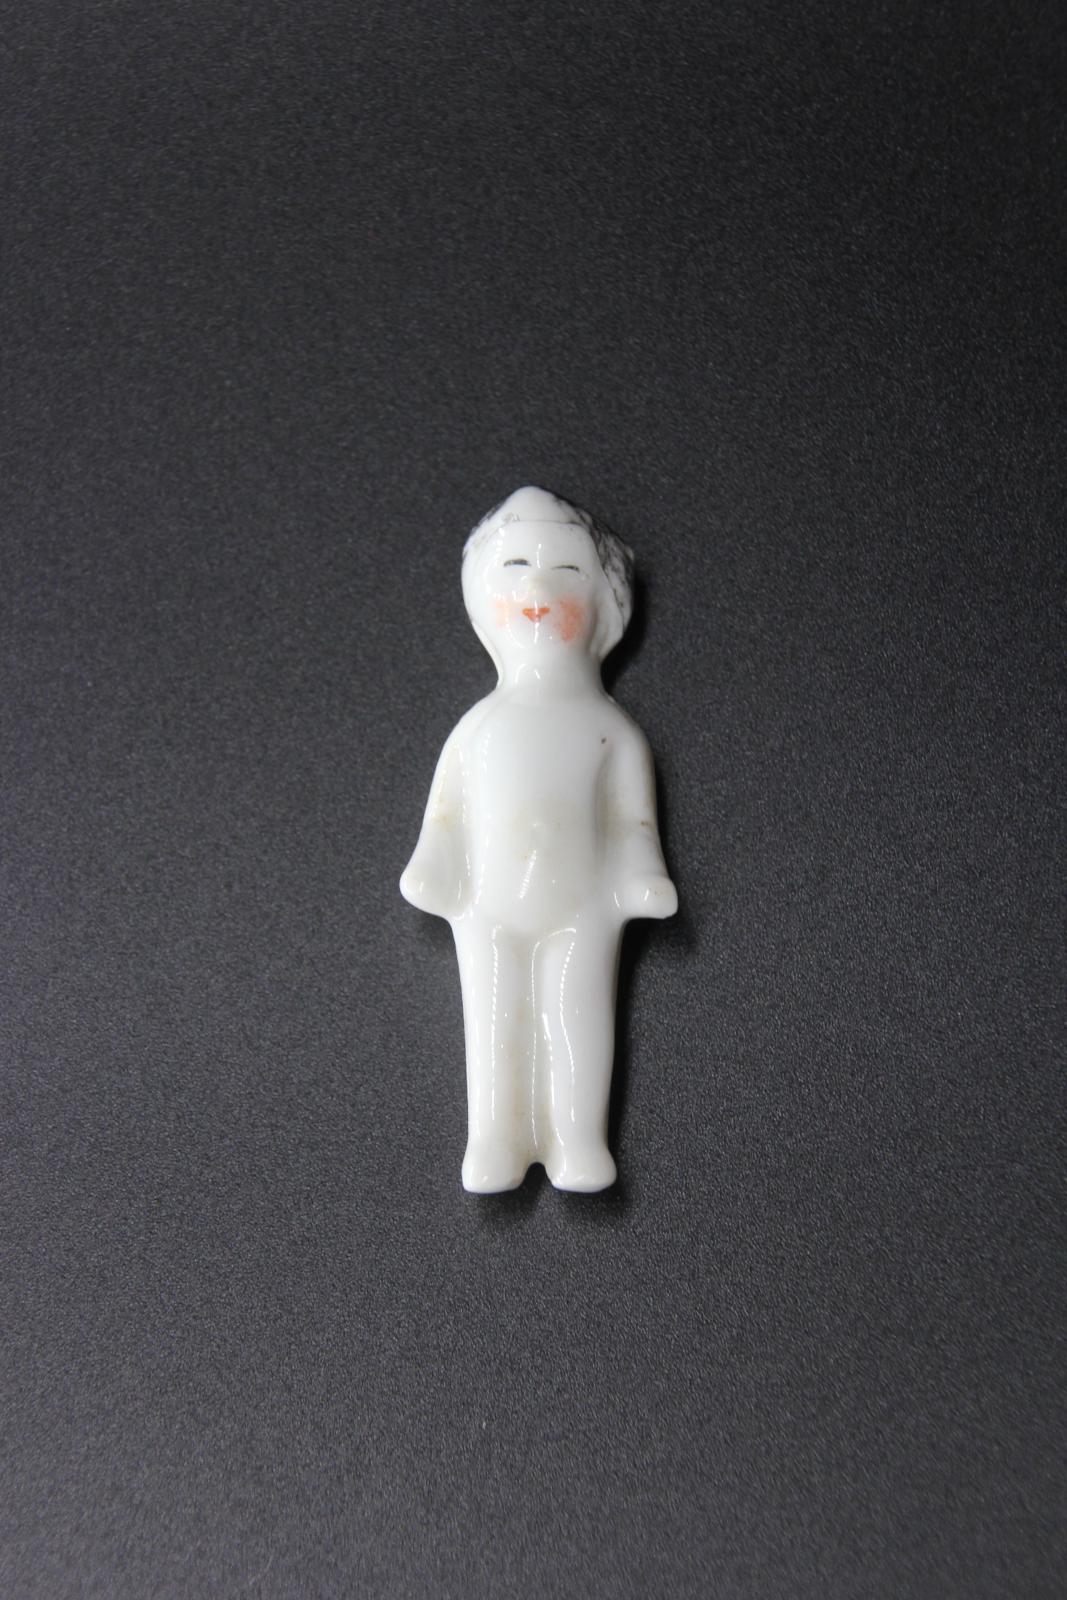 White china doll